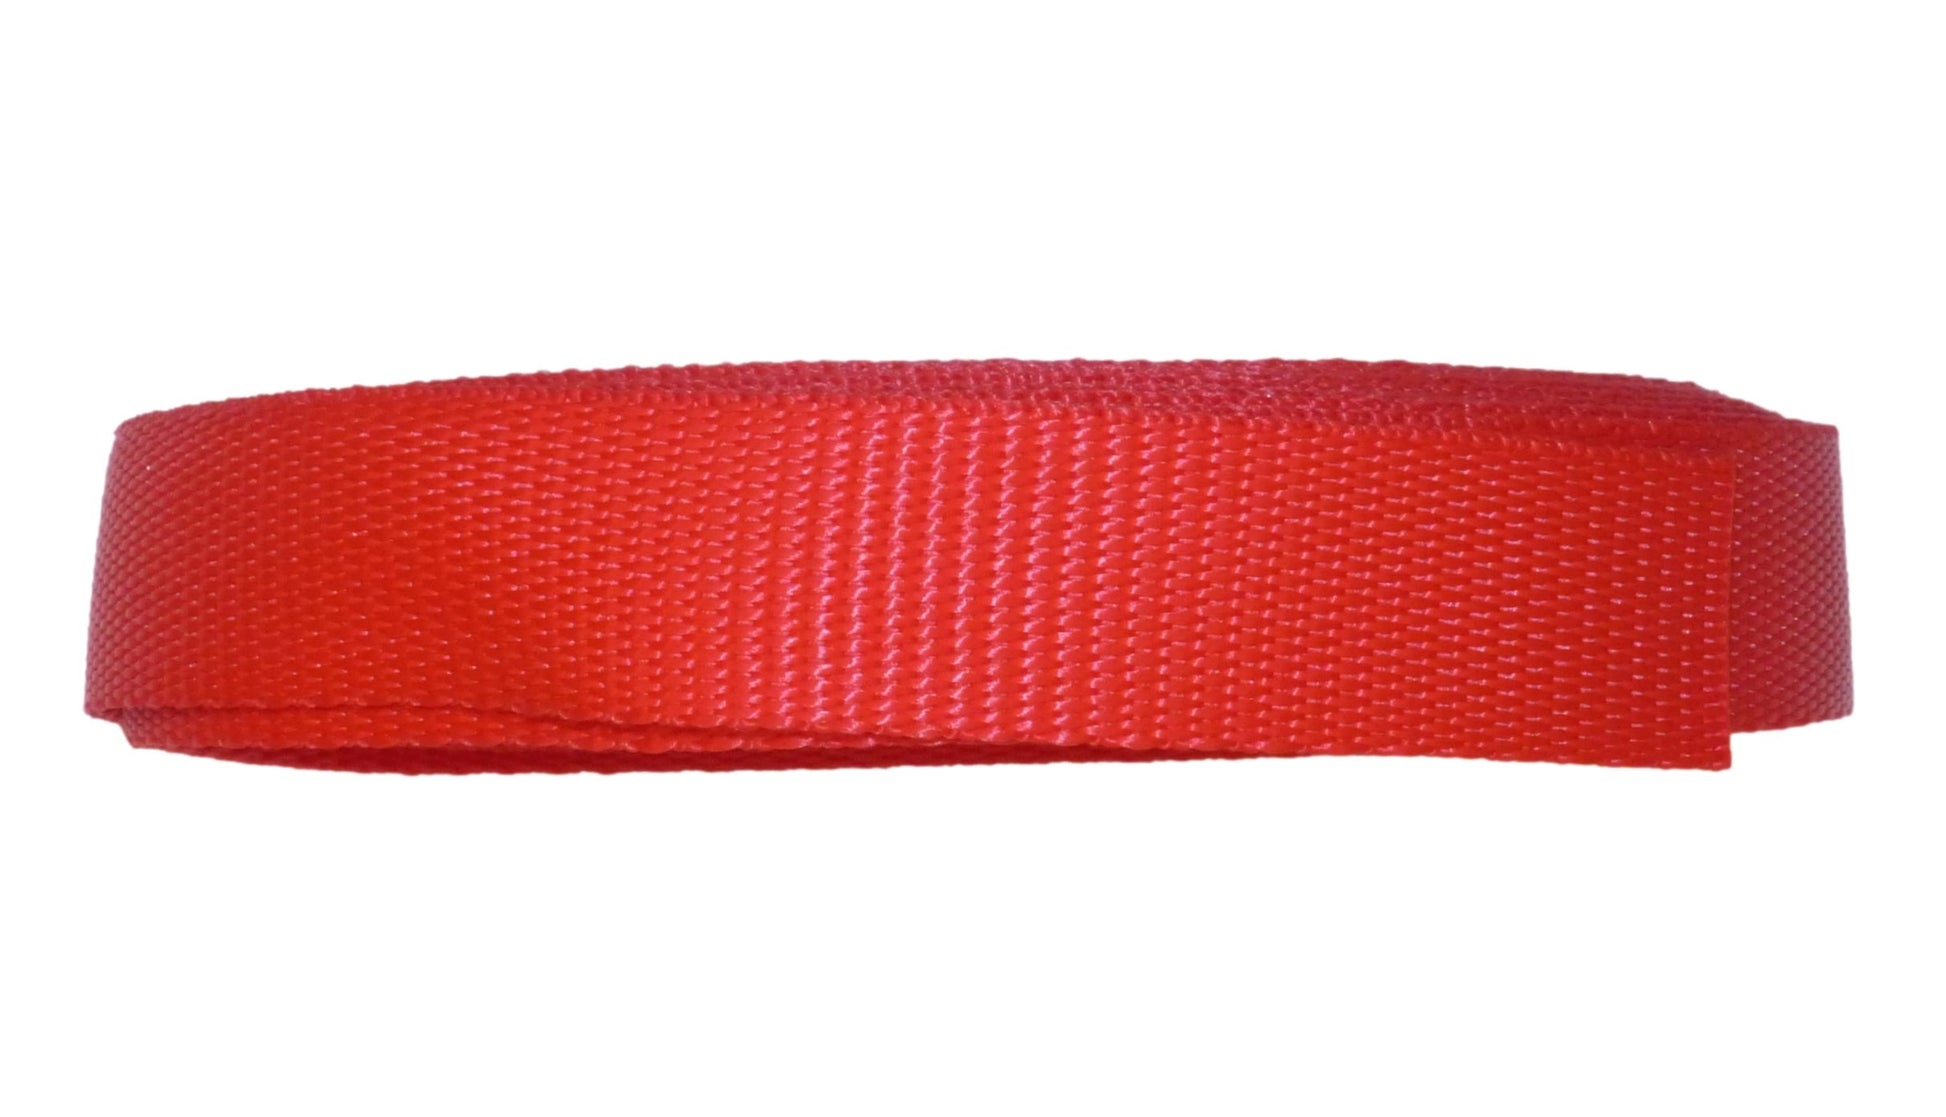 Benristraps 25mm Polypropylene Webbing, 10 metres (32') in red